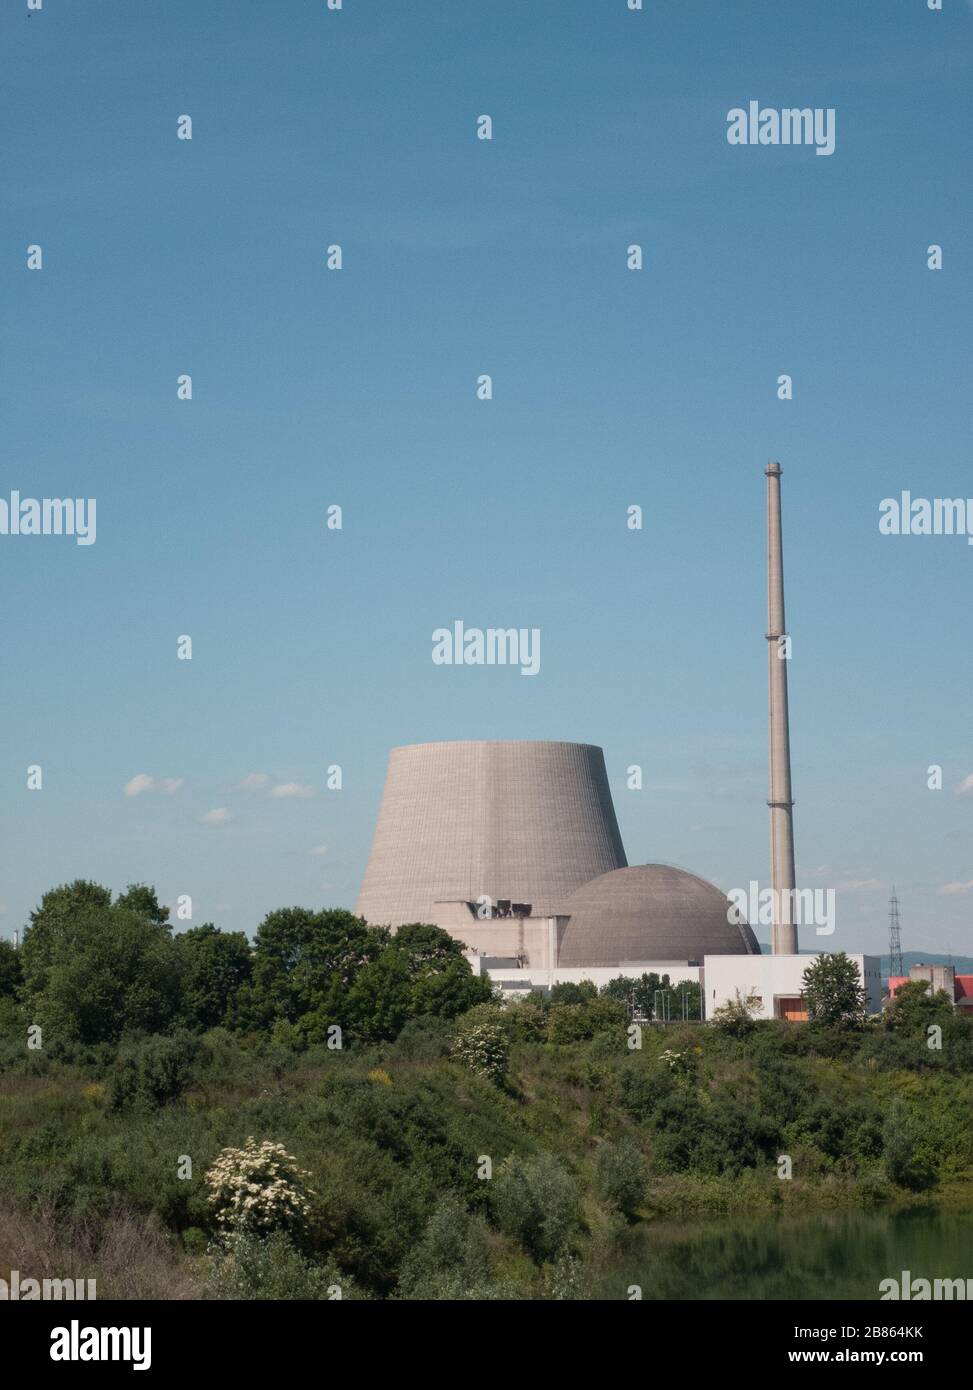 La centrale nucleare di Mulheim-Karlich (Germania) è stata chiusa, con la torre di raffreddamento parzialmente demolita della centrale chiusa Foto Stock